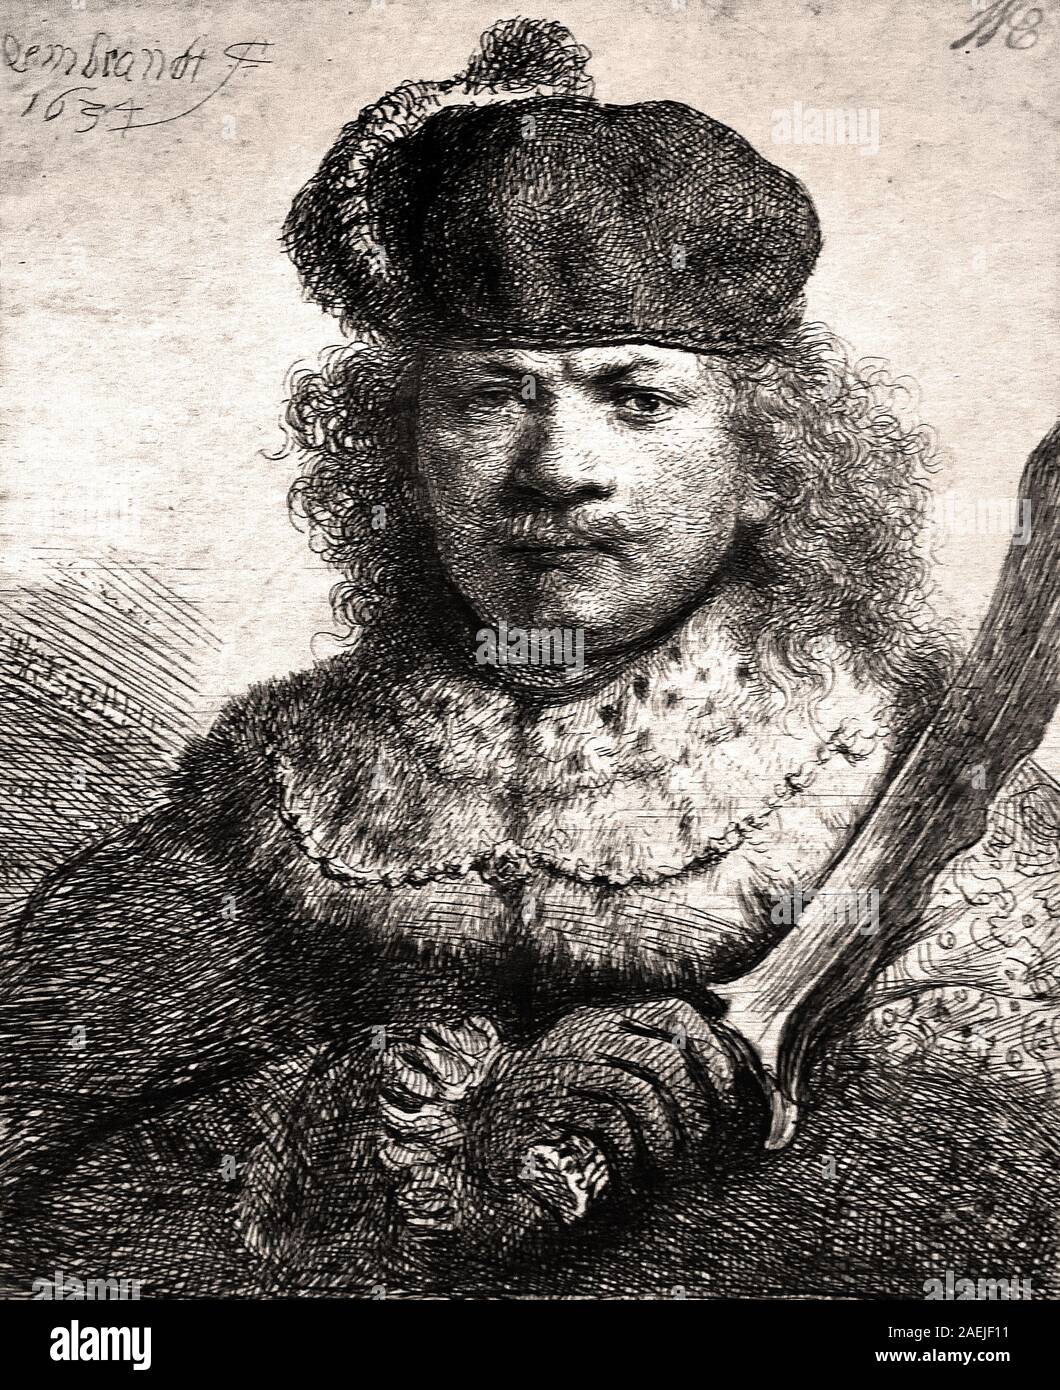 Self Portrait avec soulevées soulevées Sabre - Rembrandt Harmenszoon Plumed Cap 1634 van Rijn 1606-1669 Néerlandais, les Pays-Bas, la Hollande, Banque D'Images